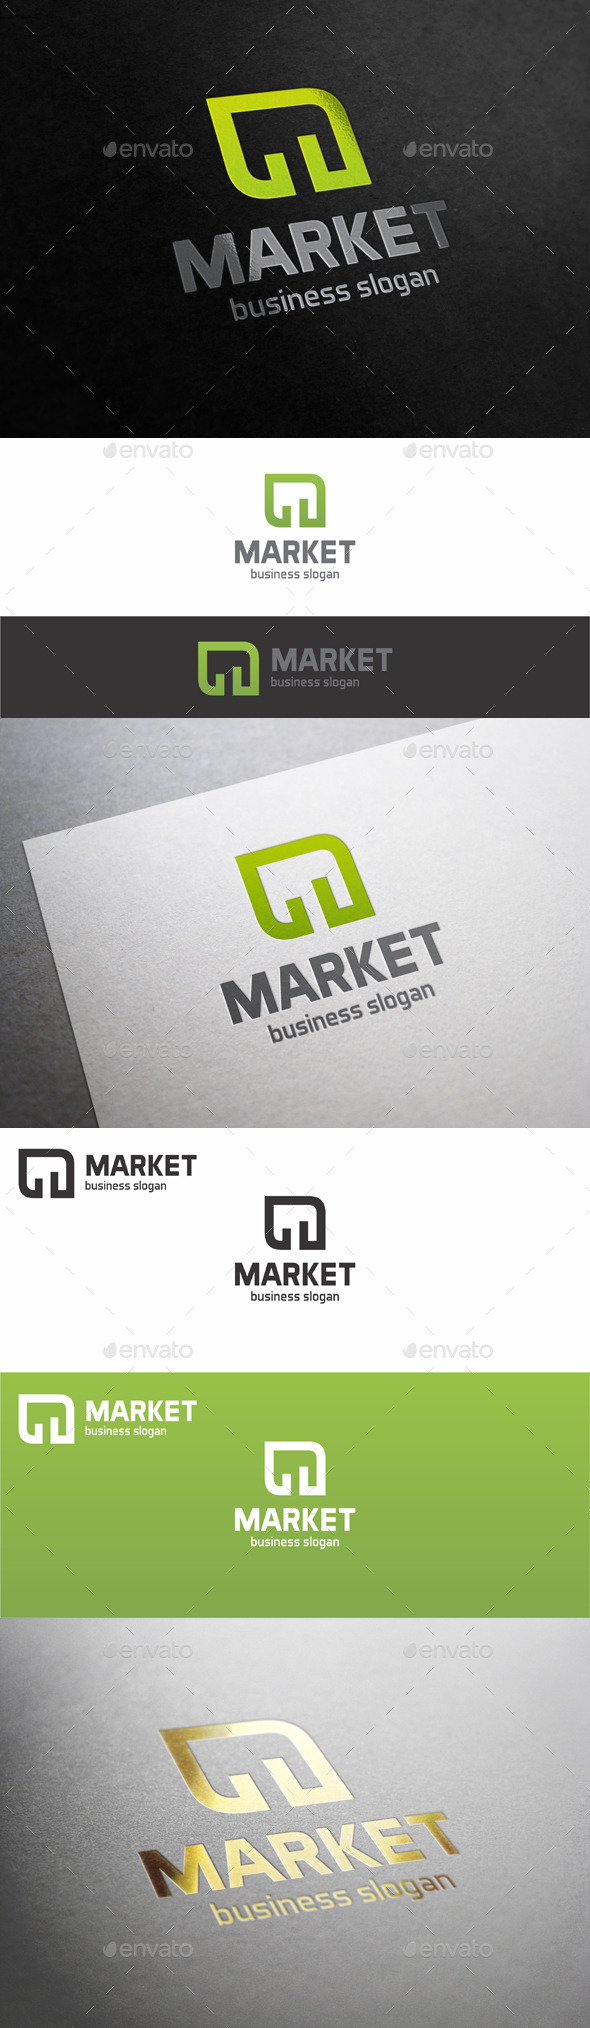 Market Stats Green Leaf Logo